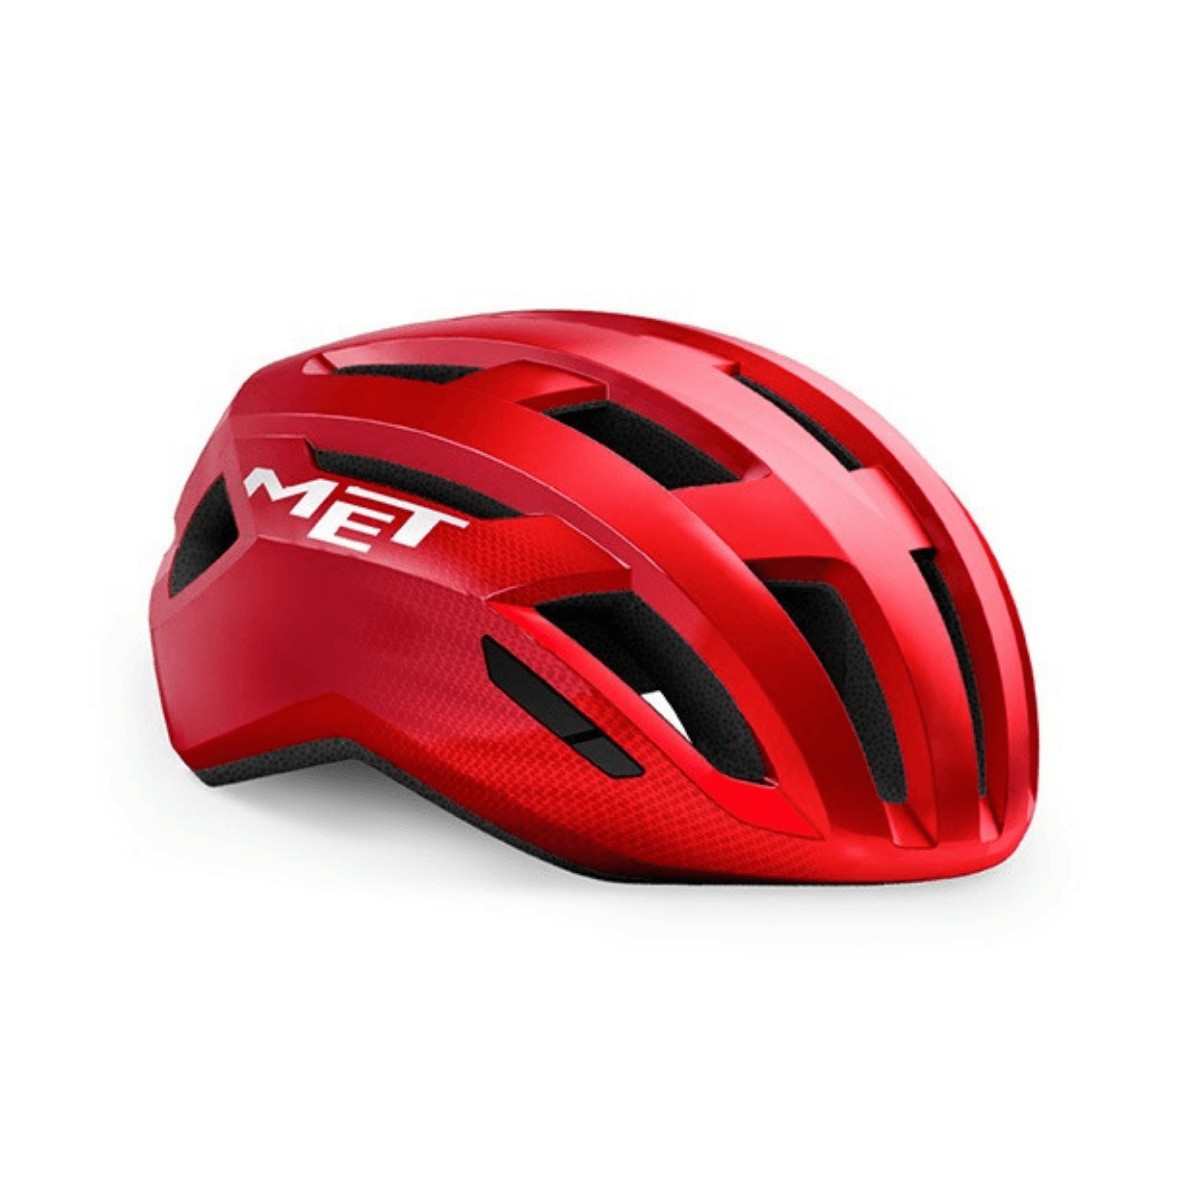 MET Vinci MIPS Red Helmet, Size M (56-58 cm)